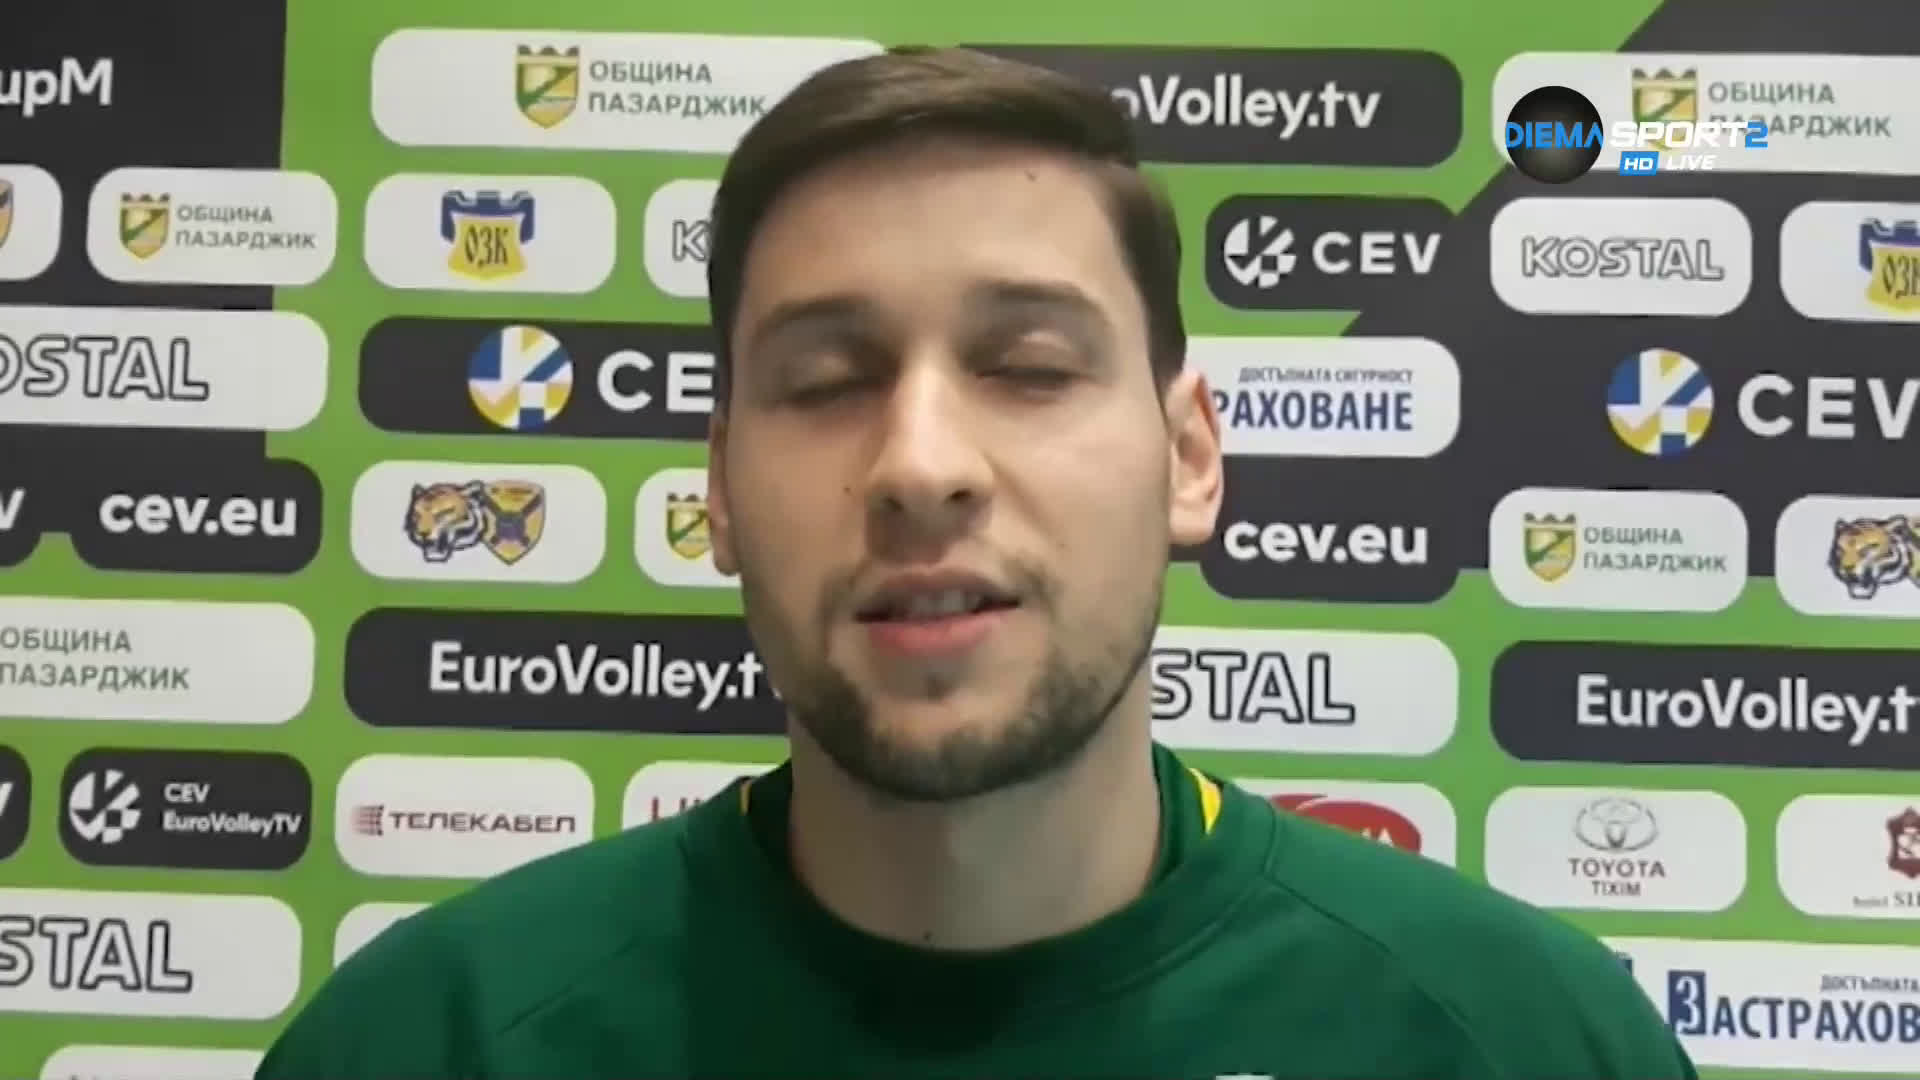 Николай Пенчев: Вълнувам се, че ще играя отново в България